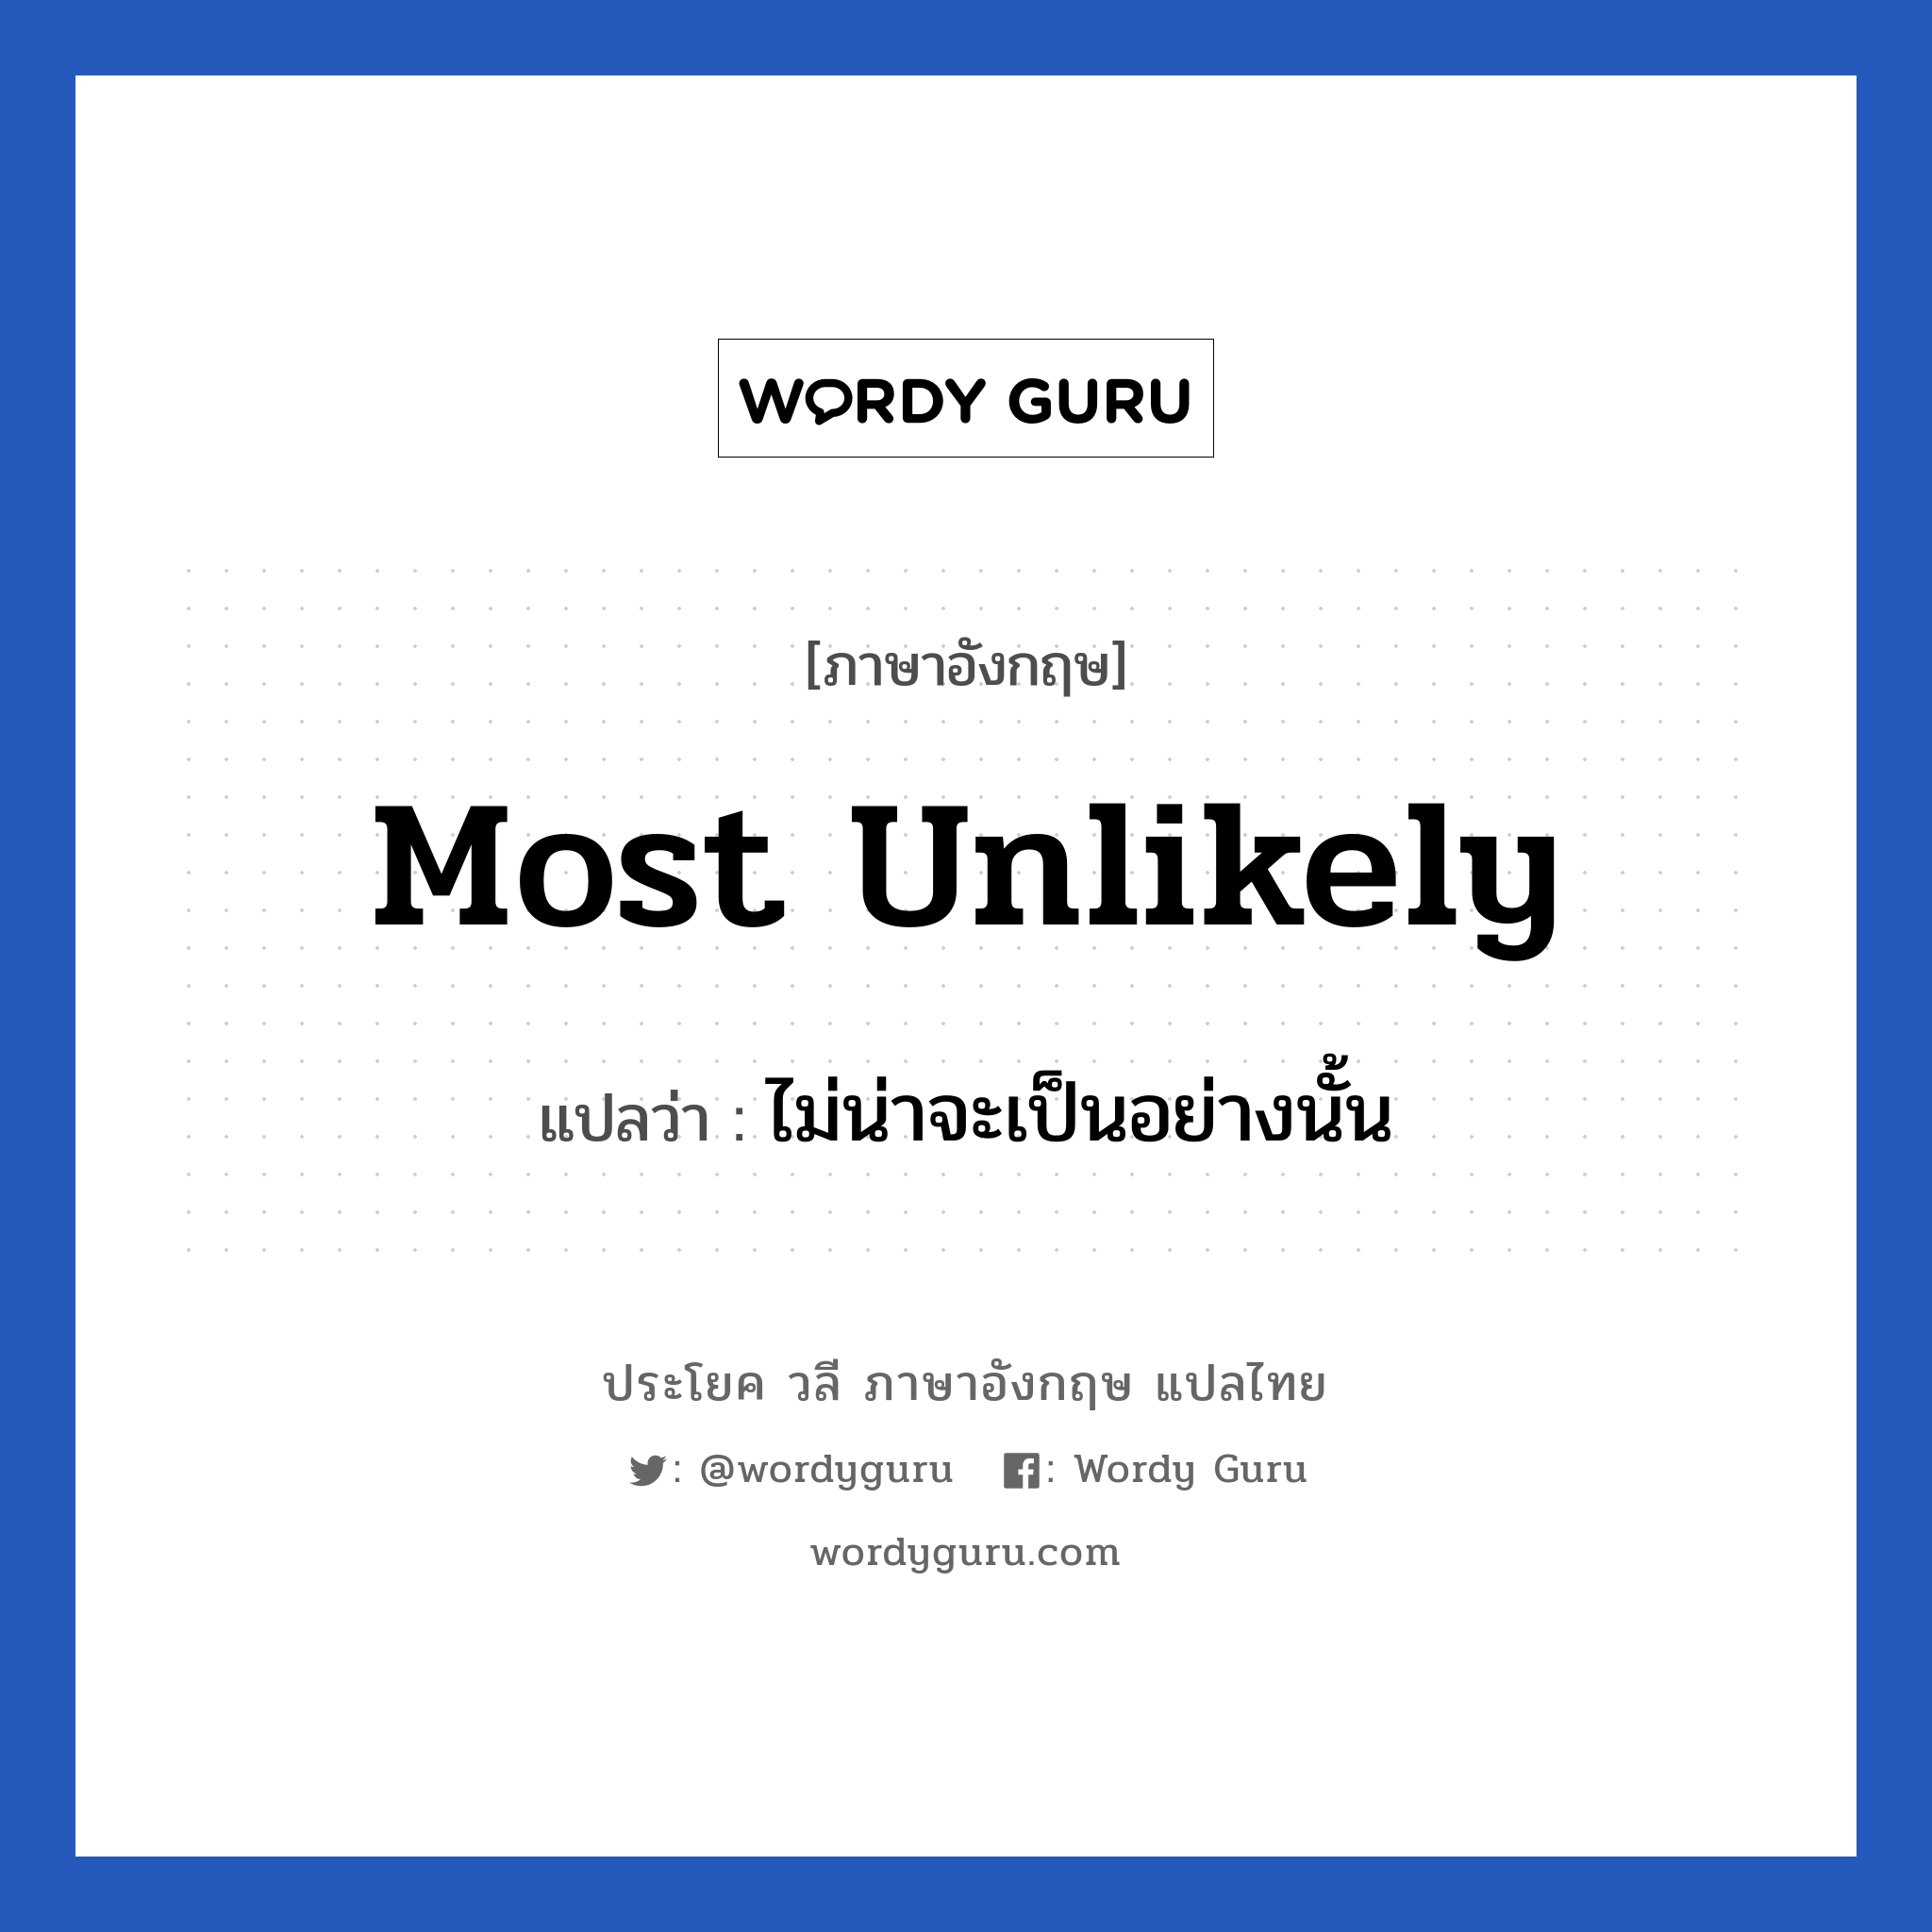 Most unlikely แปลว่า?, วลีภาษาอังกฤษ Most unlikely แปลว่า ไม่น่าจะเป็นอย่างนั้น